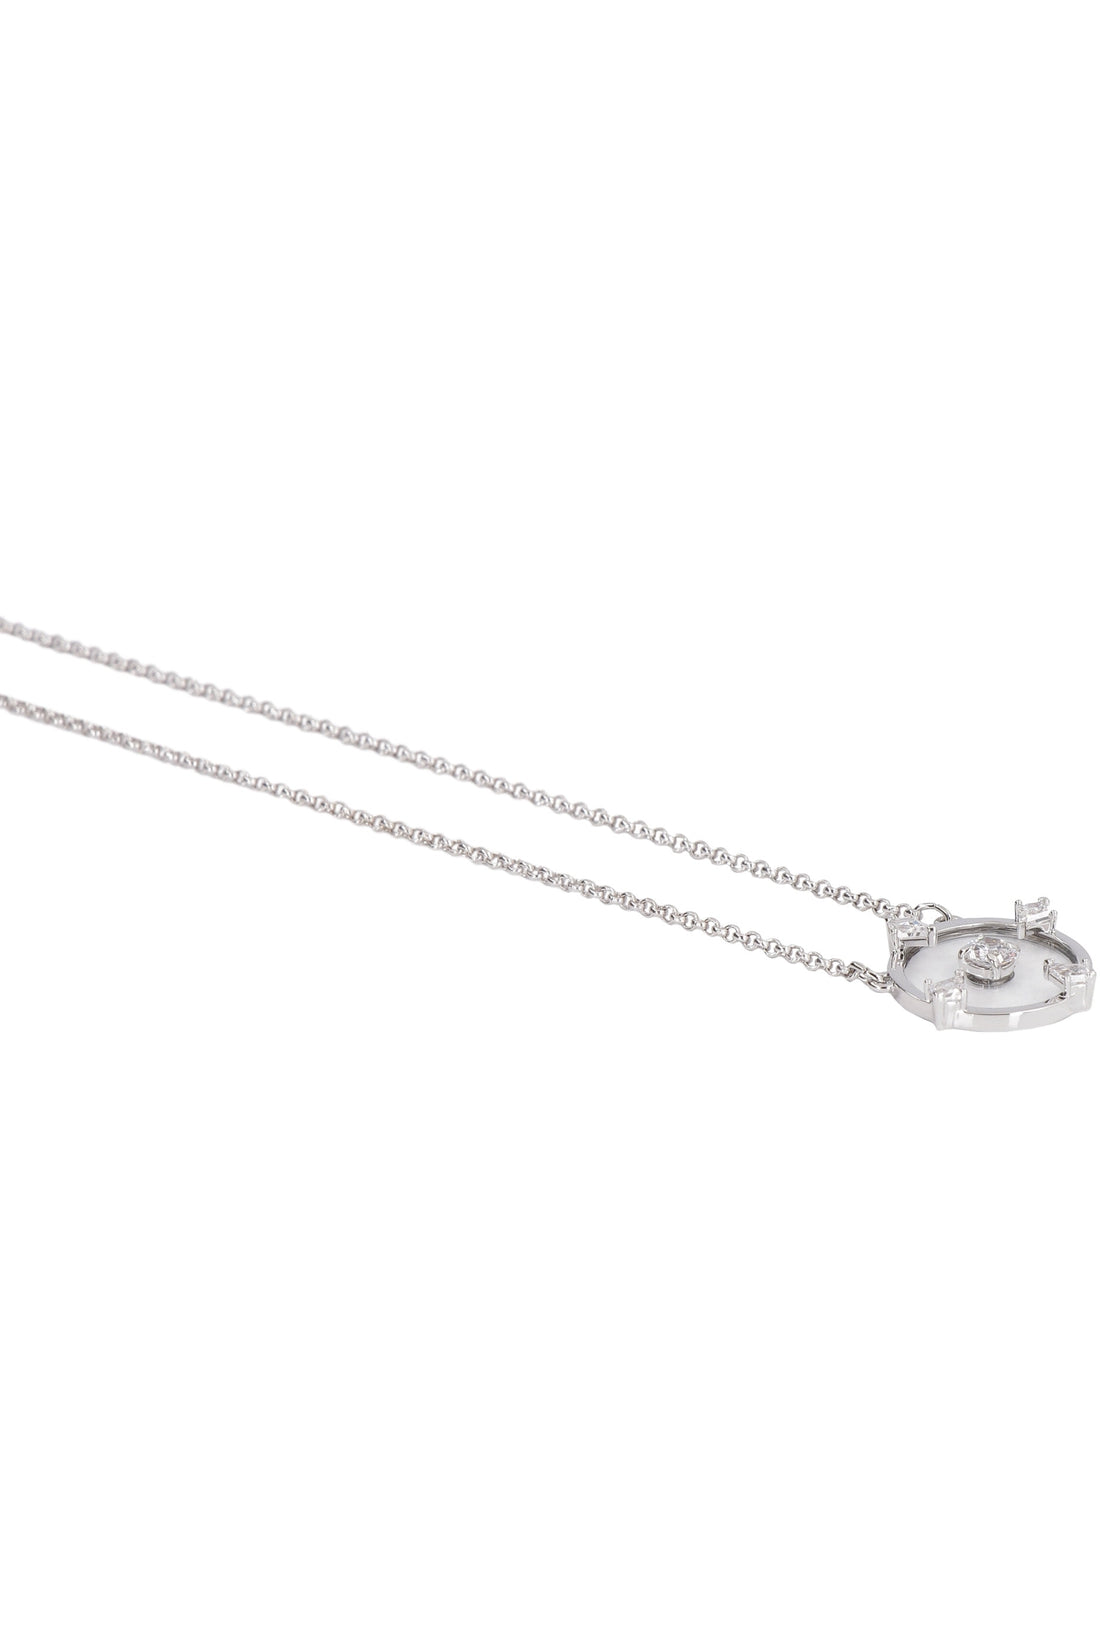 Piralo-OUTLET-SALE-Crystal pendant necklace-ARCHIVIST